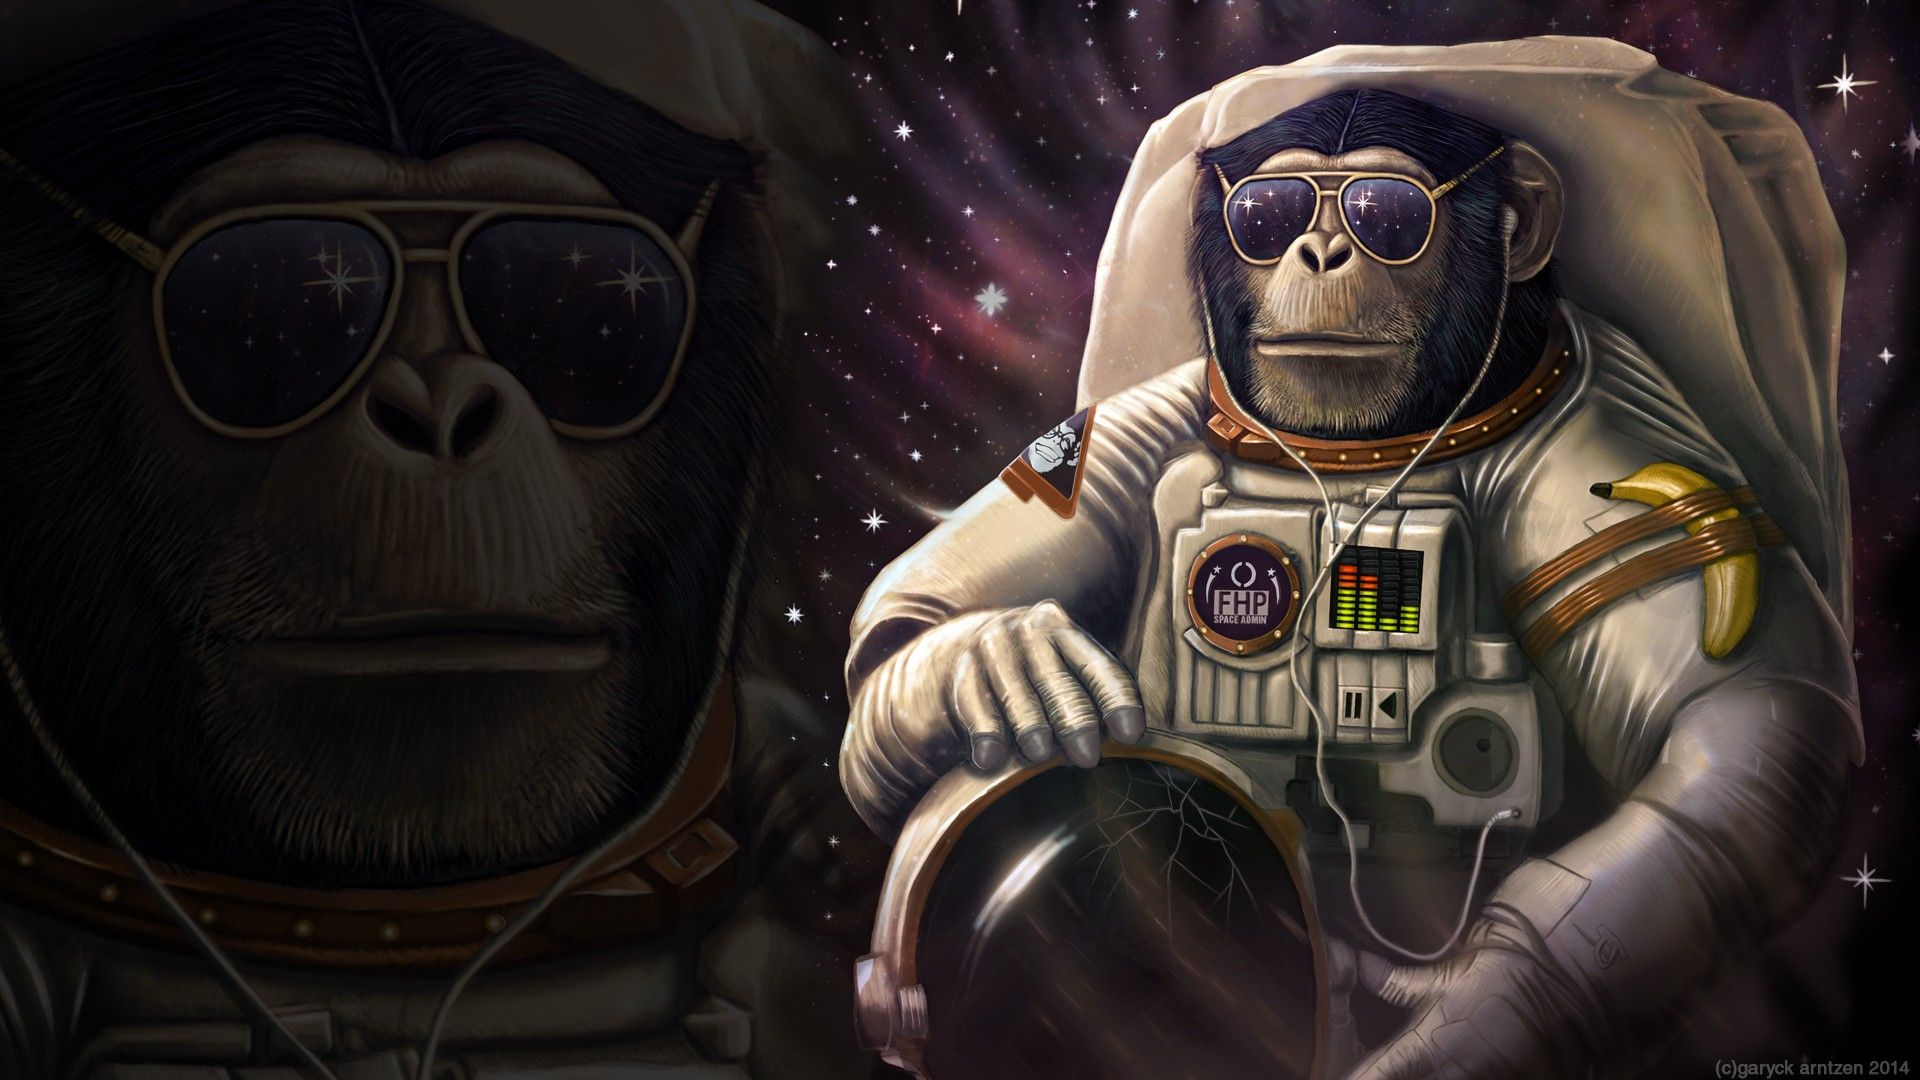 멋진 원숭이 벽지,우주 비행사,생기,우주,소설 속의 인물,삽화